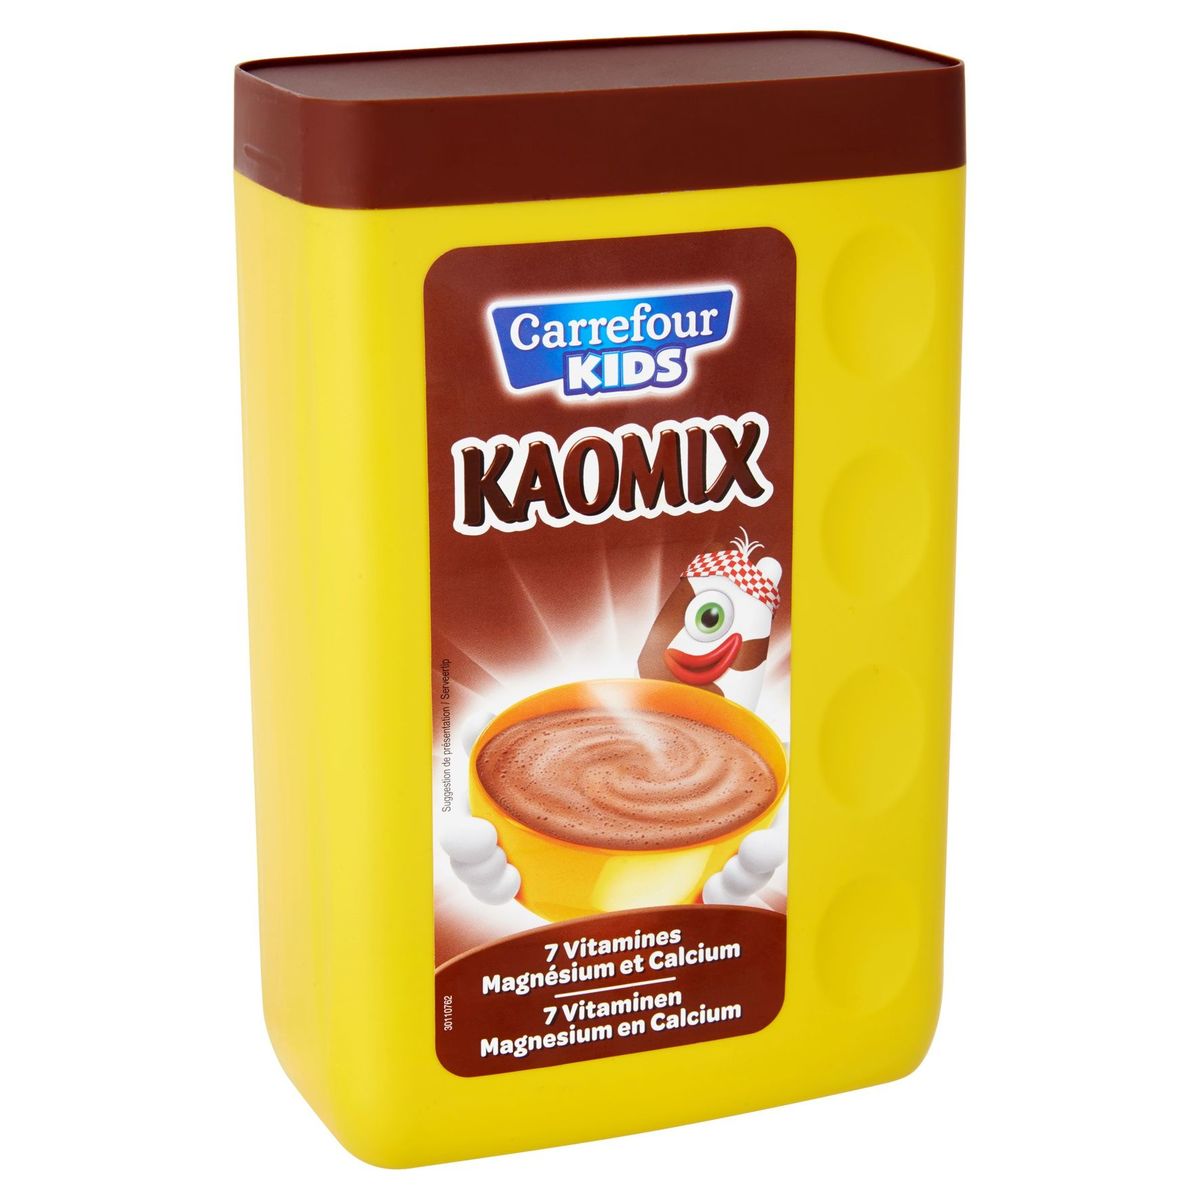 Carrefour Kids Kaomix 7 Vitaminen Magnesium en Calcium 1 kg